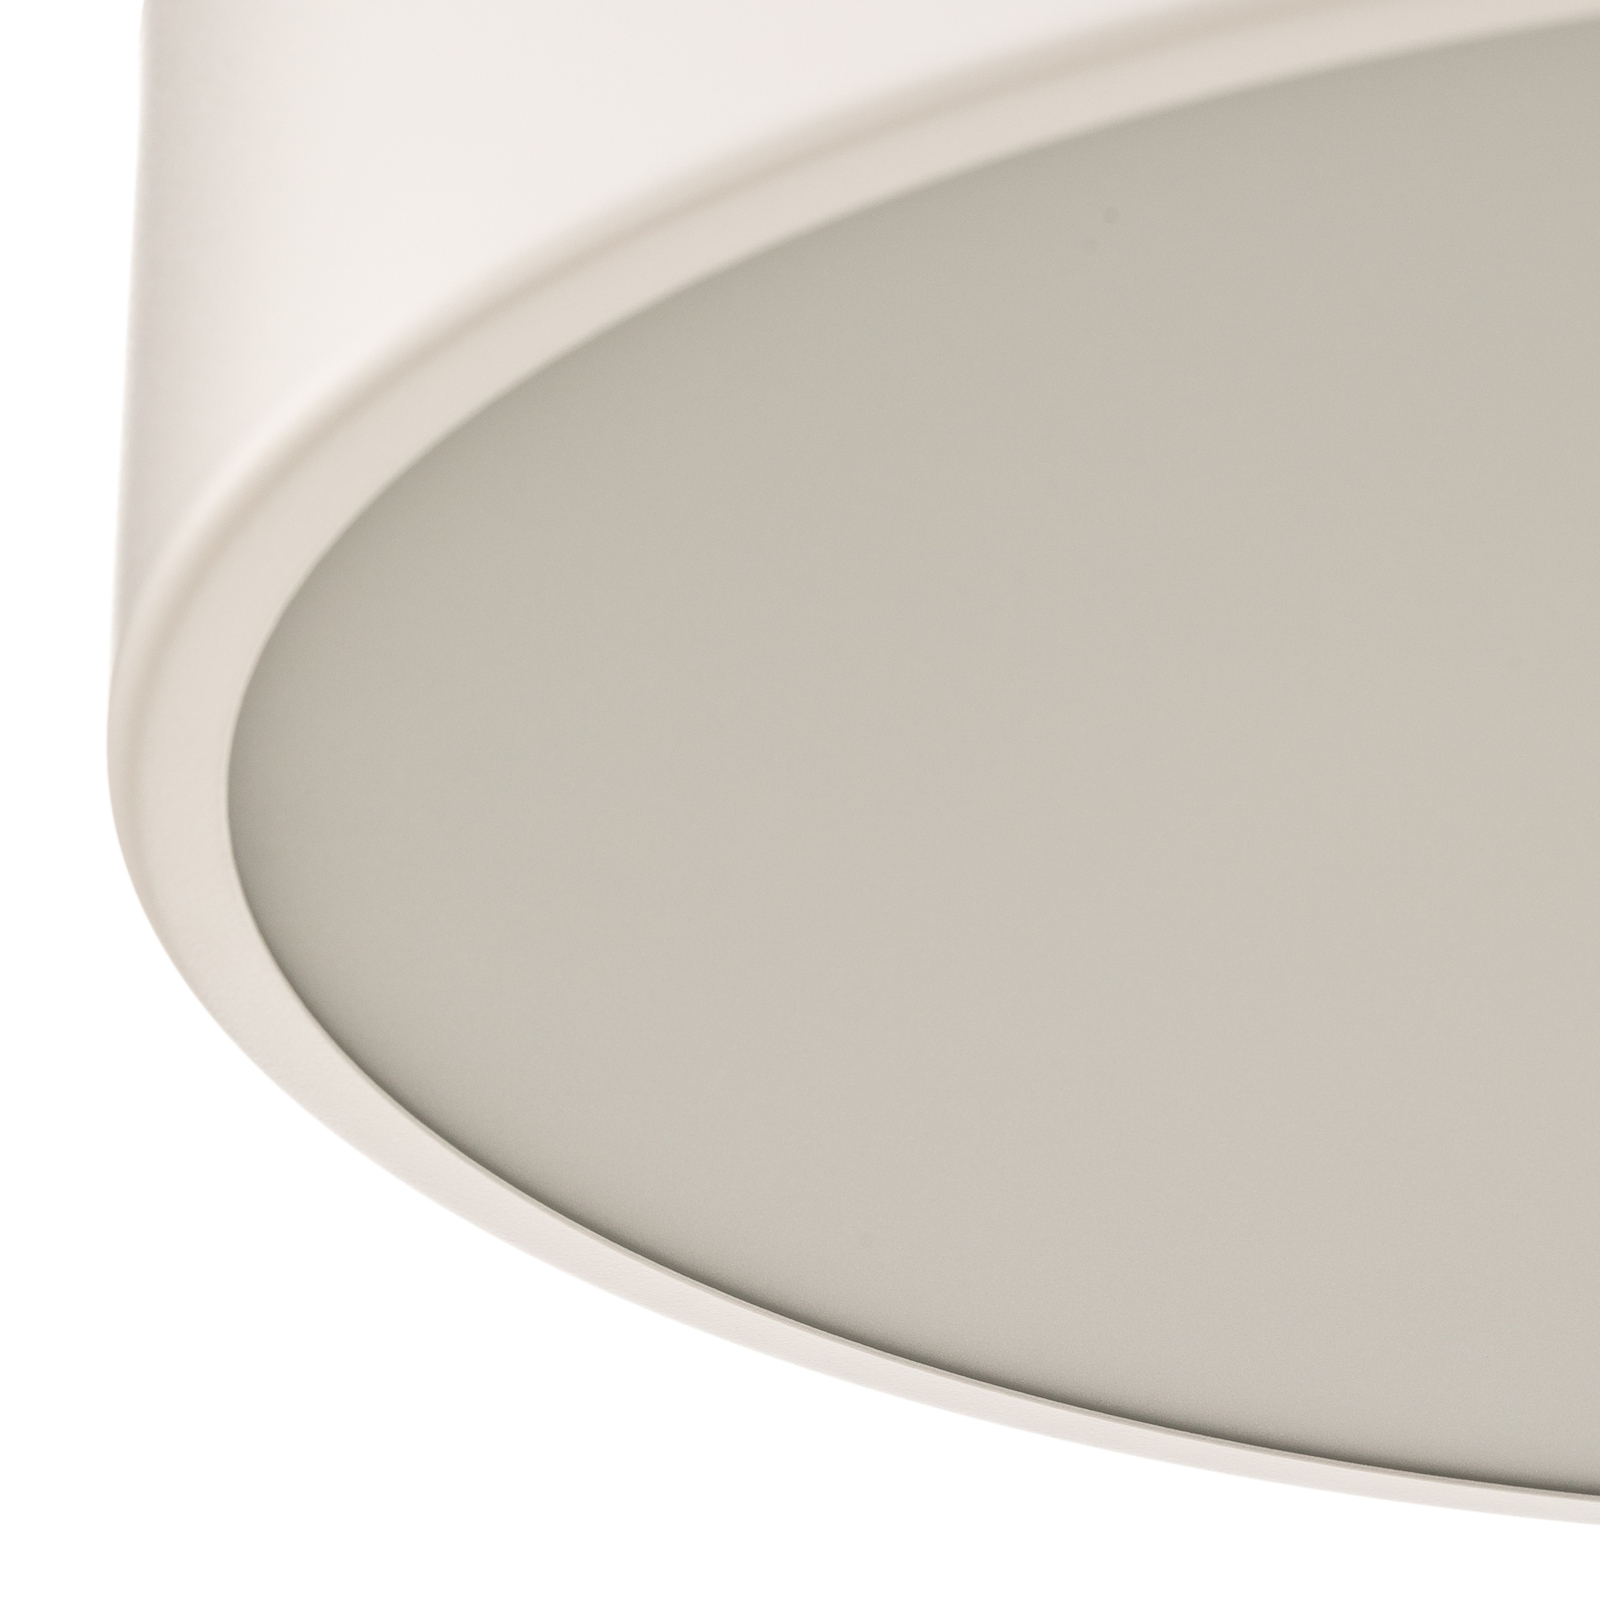 Cleo 400 ceiling light, sensor, Ø 40 cm white